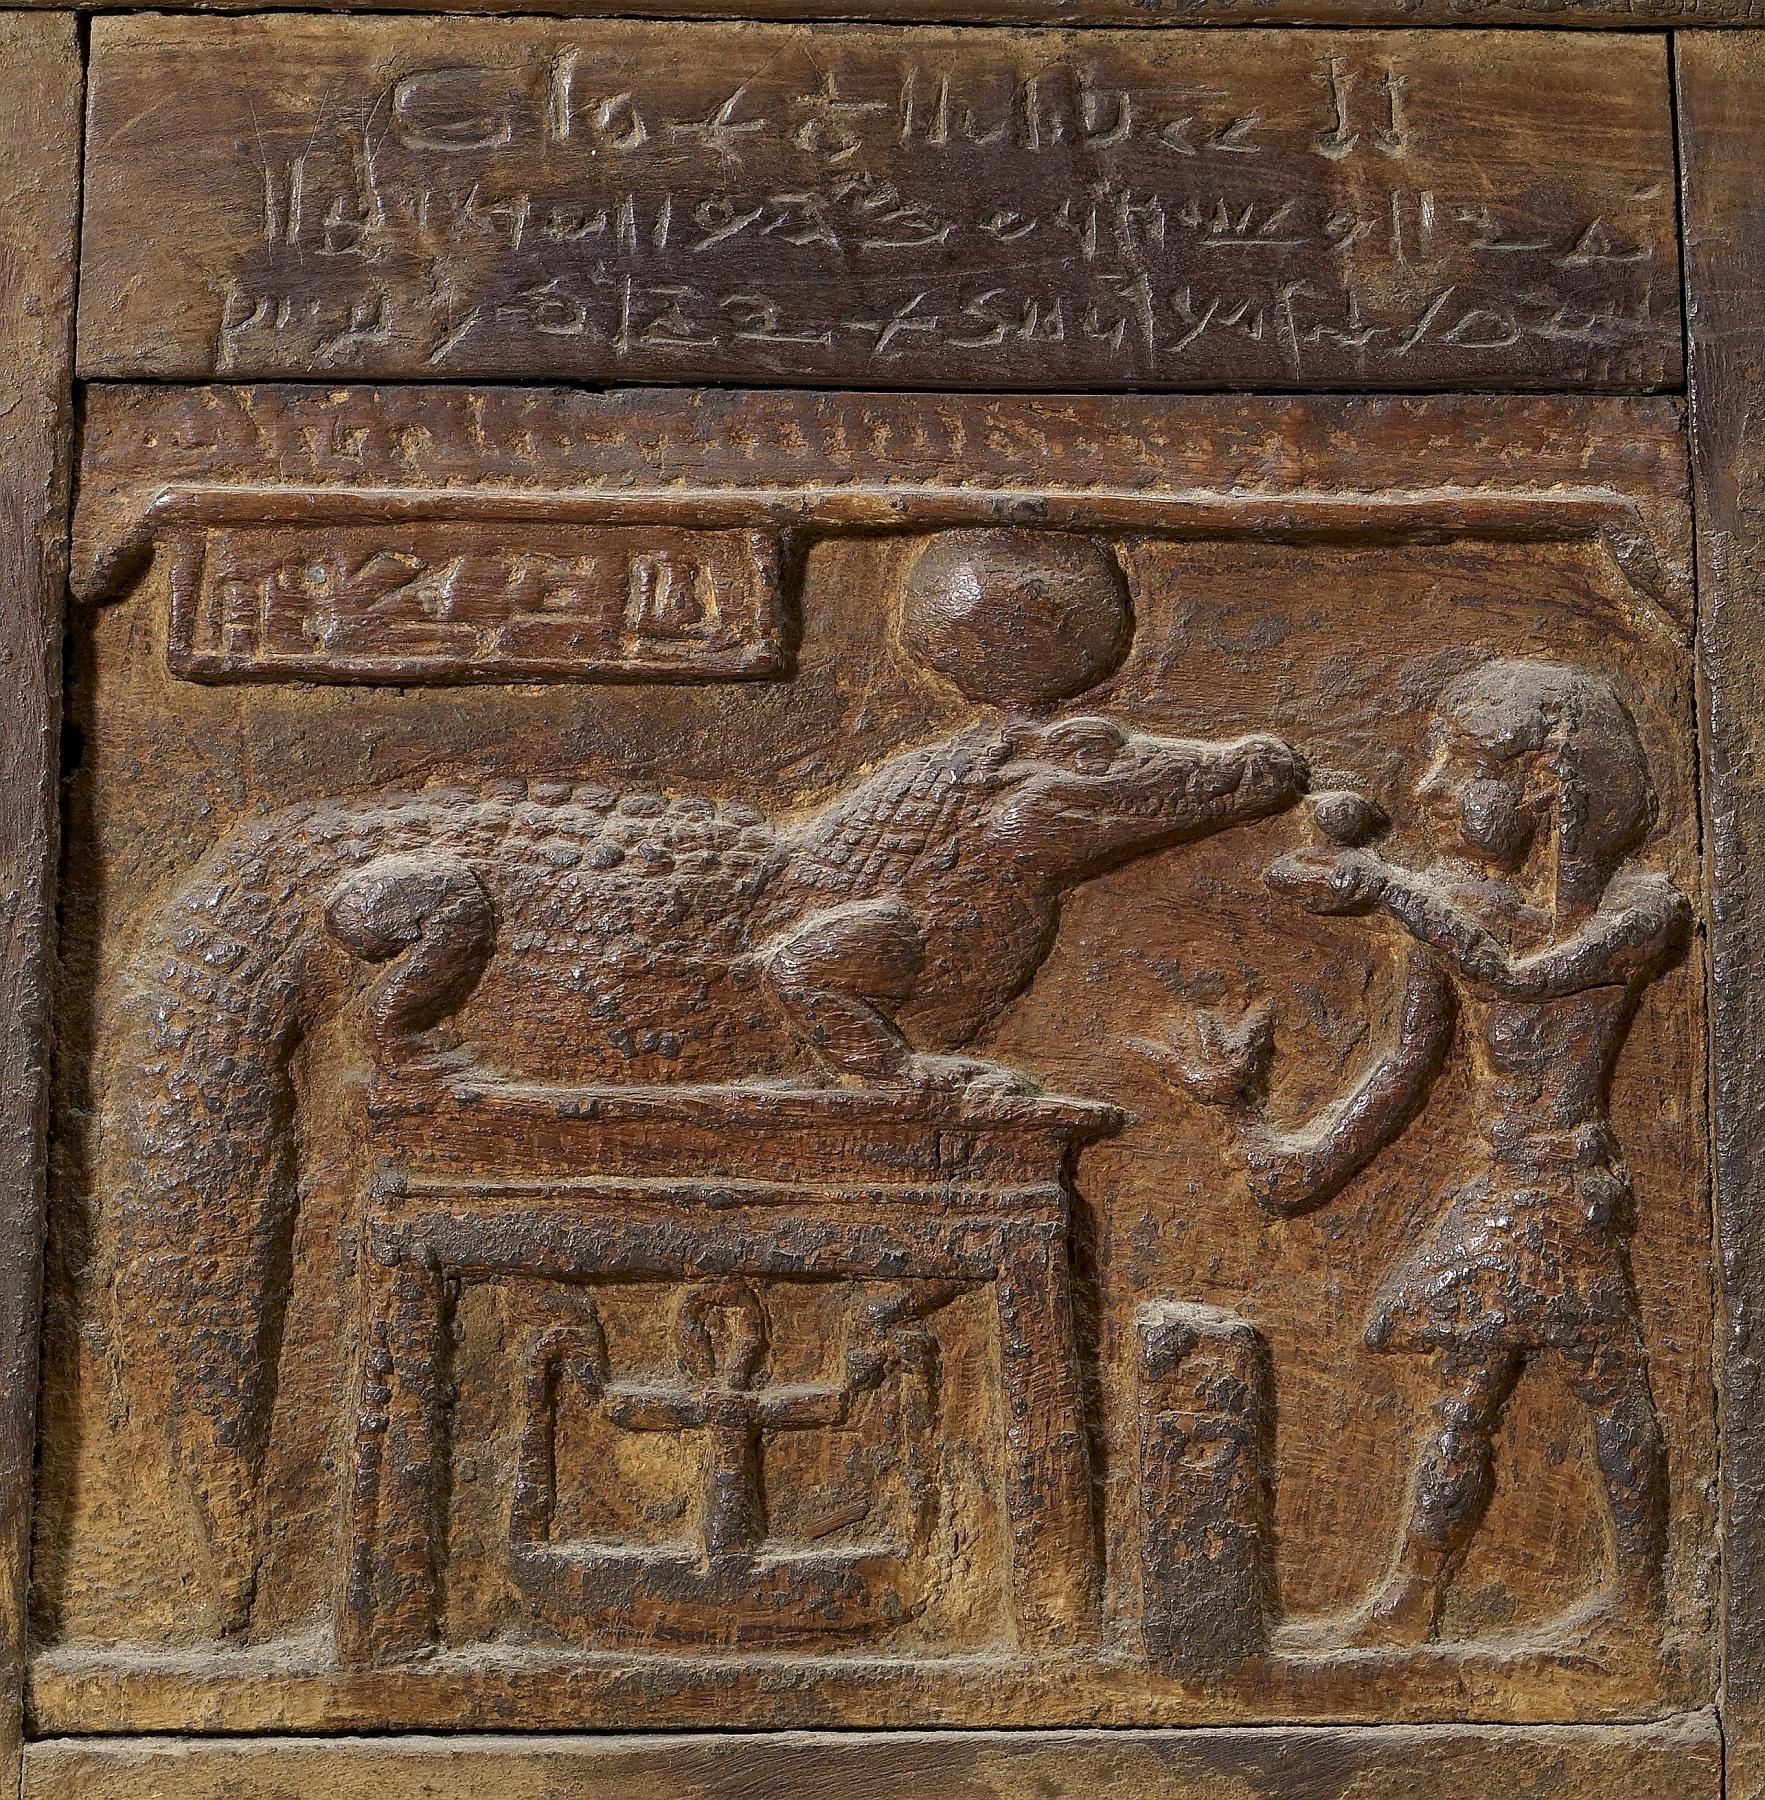 Sacerdote realizando una ofrenda a Sobek, relieve del siglo i a. C.